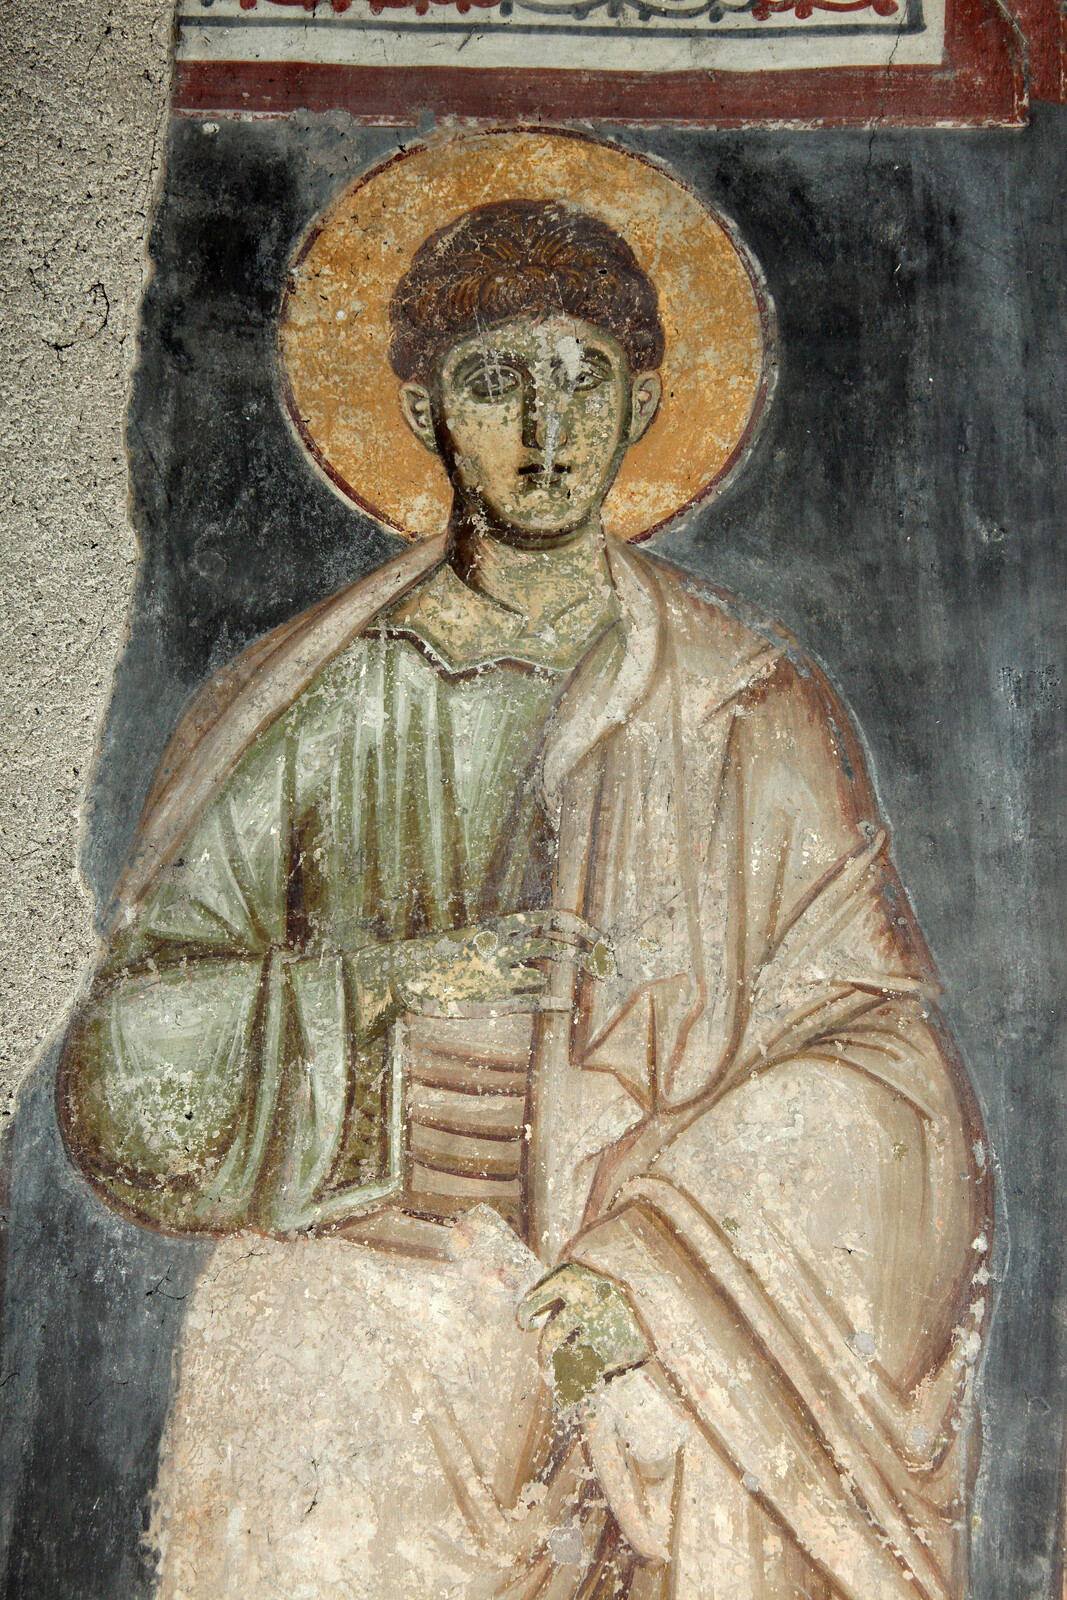 St. Stephen the Protomartyr, detail